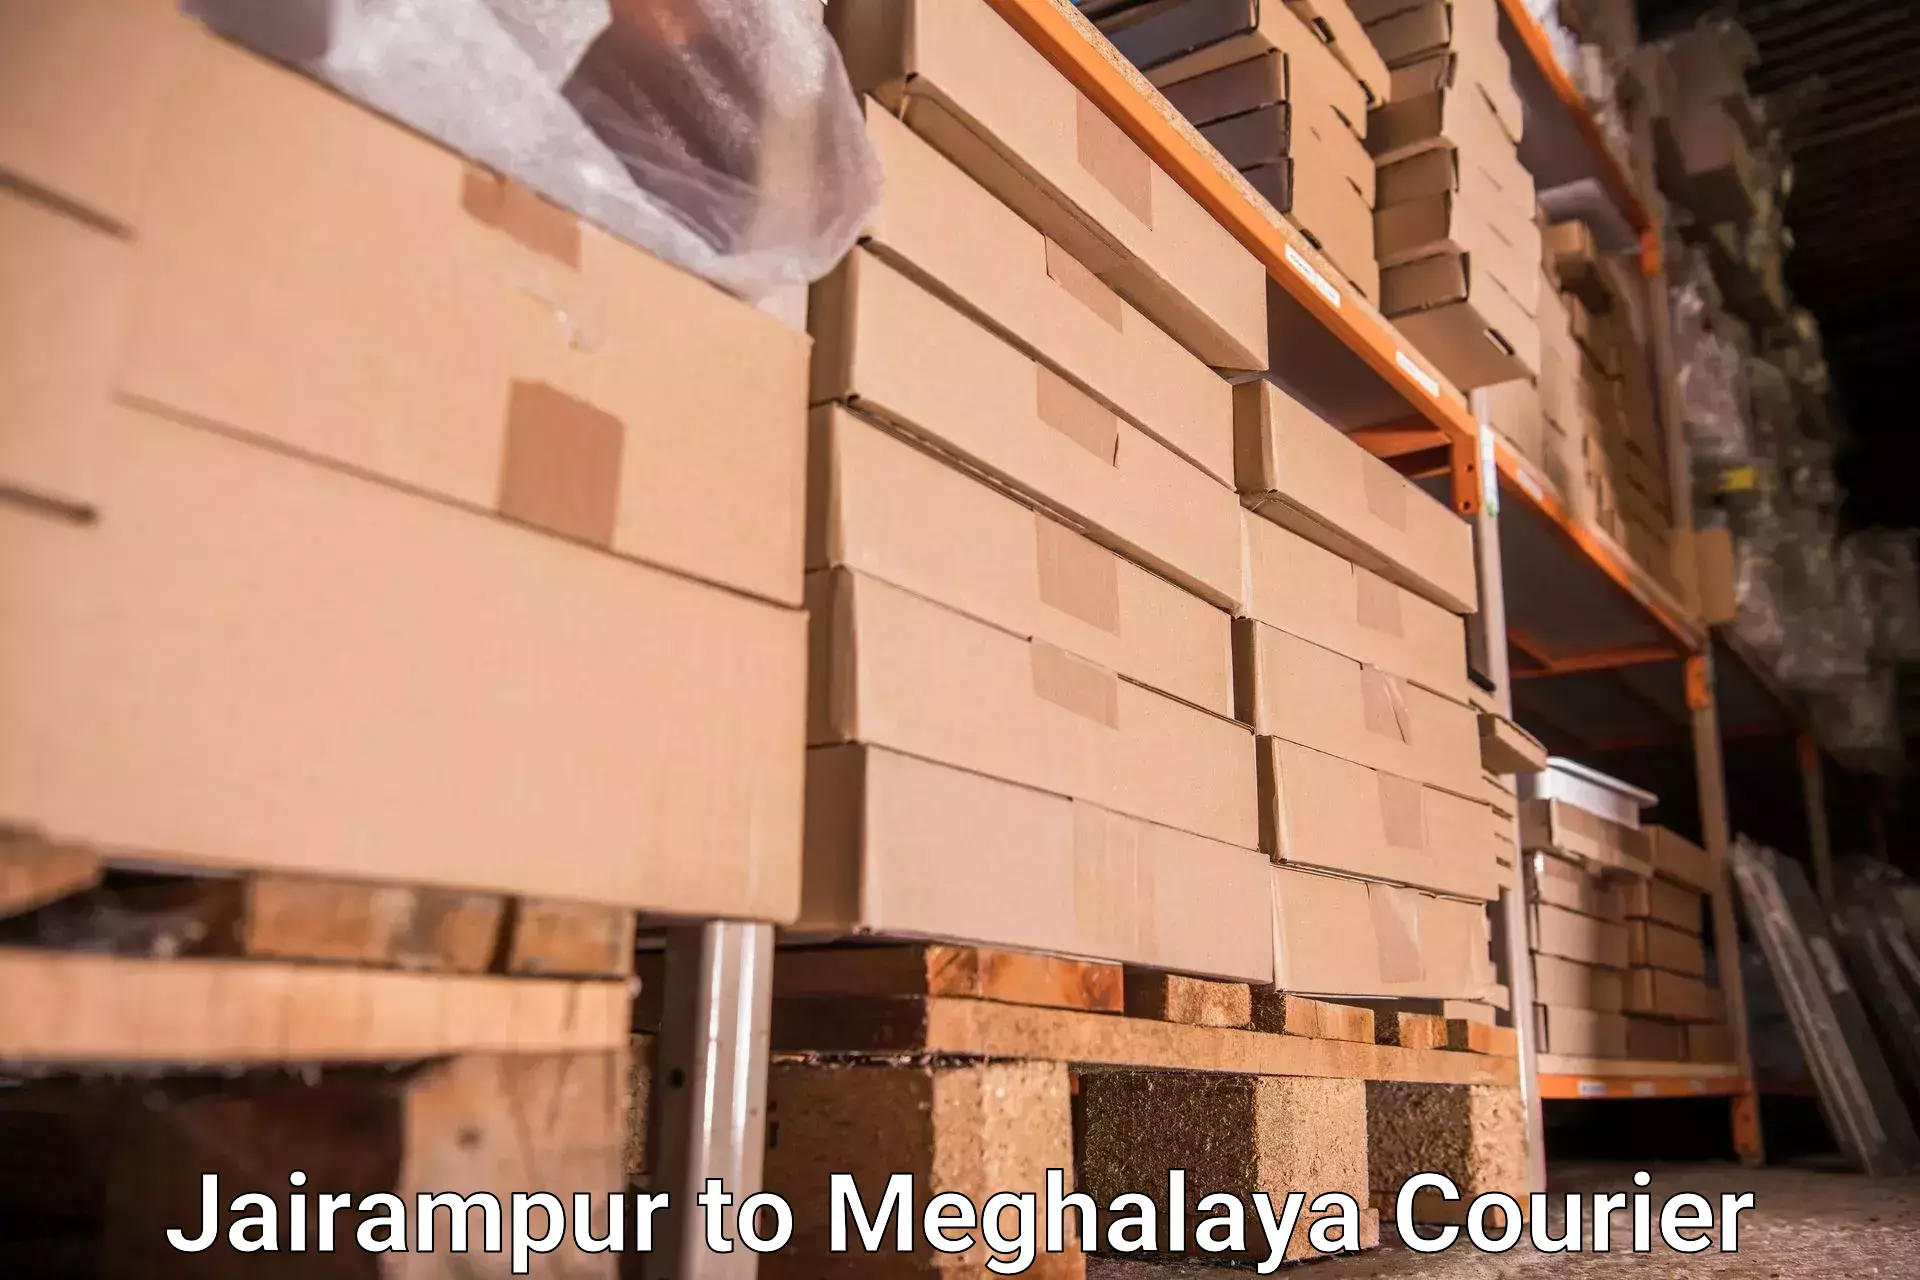 Luggage transport consulting Jairampur to Meghalaya